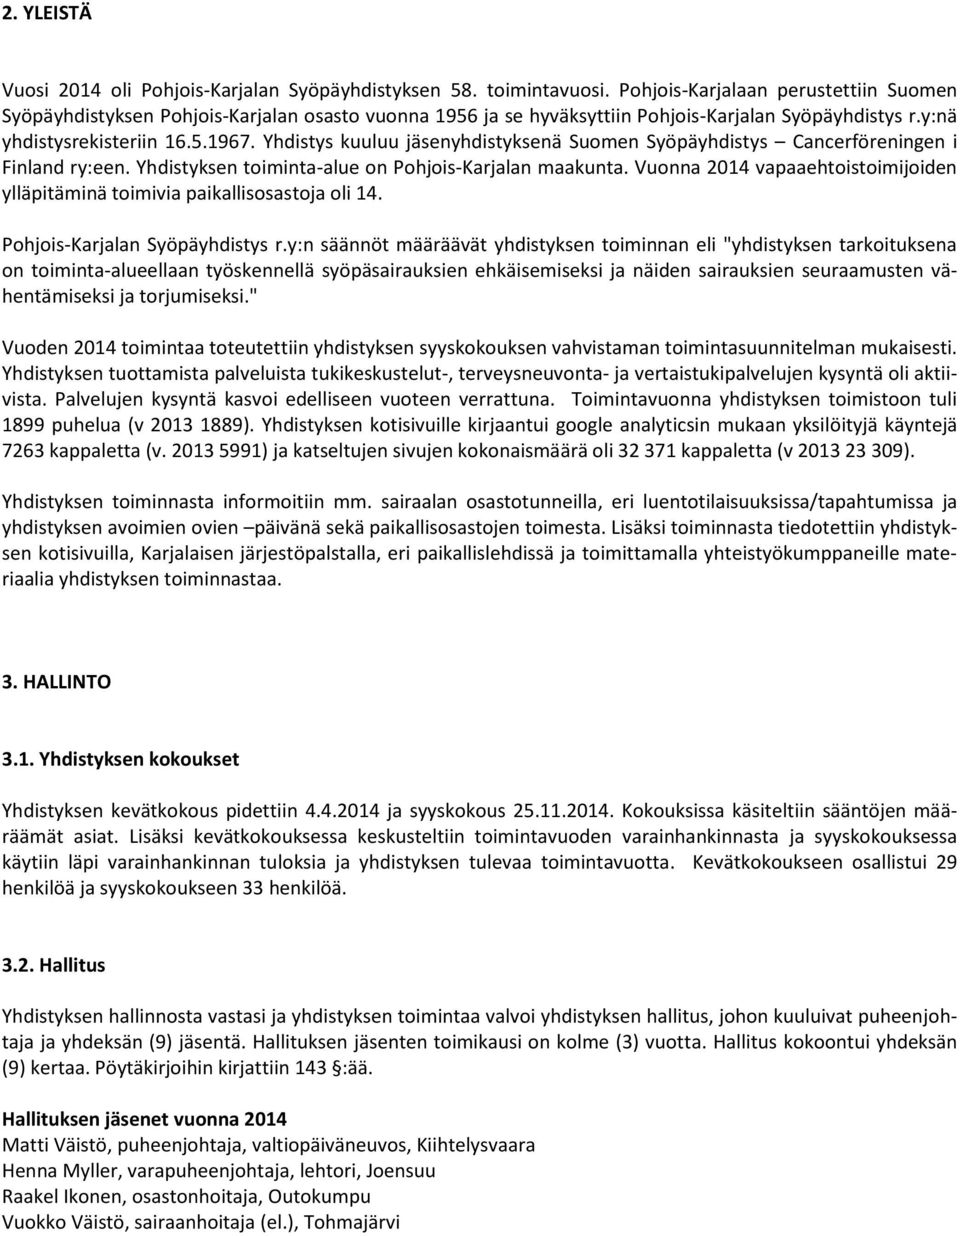 Yhdistys kuuluu jäsenyhdistyksenä Suomen Syöpäyhdistys Cancerföreningen i Finland ry:een. Yhdistyksen toiminta-alue on Pohjois-Karjalan maakunta.